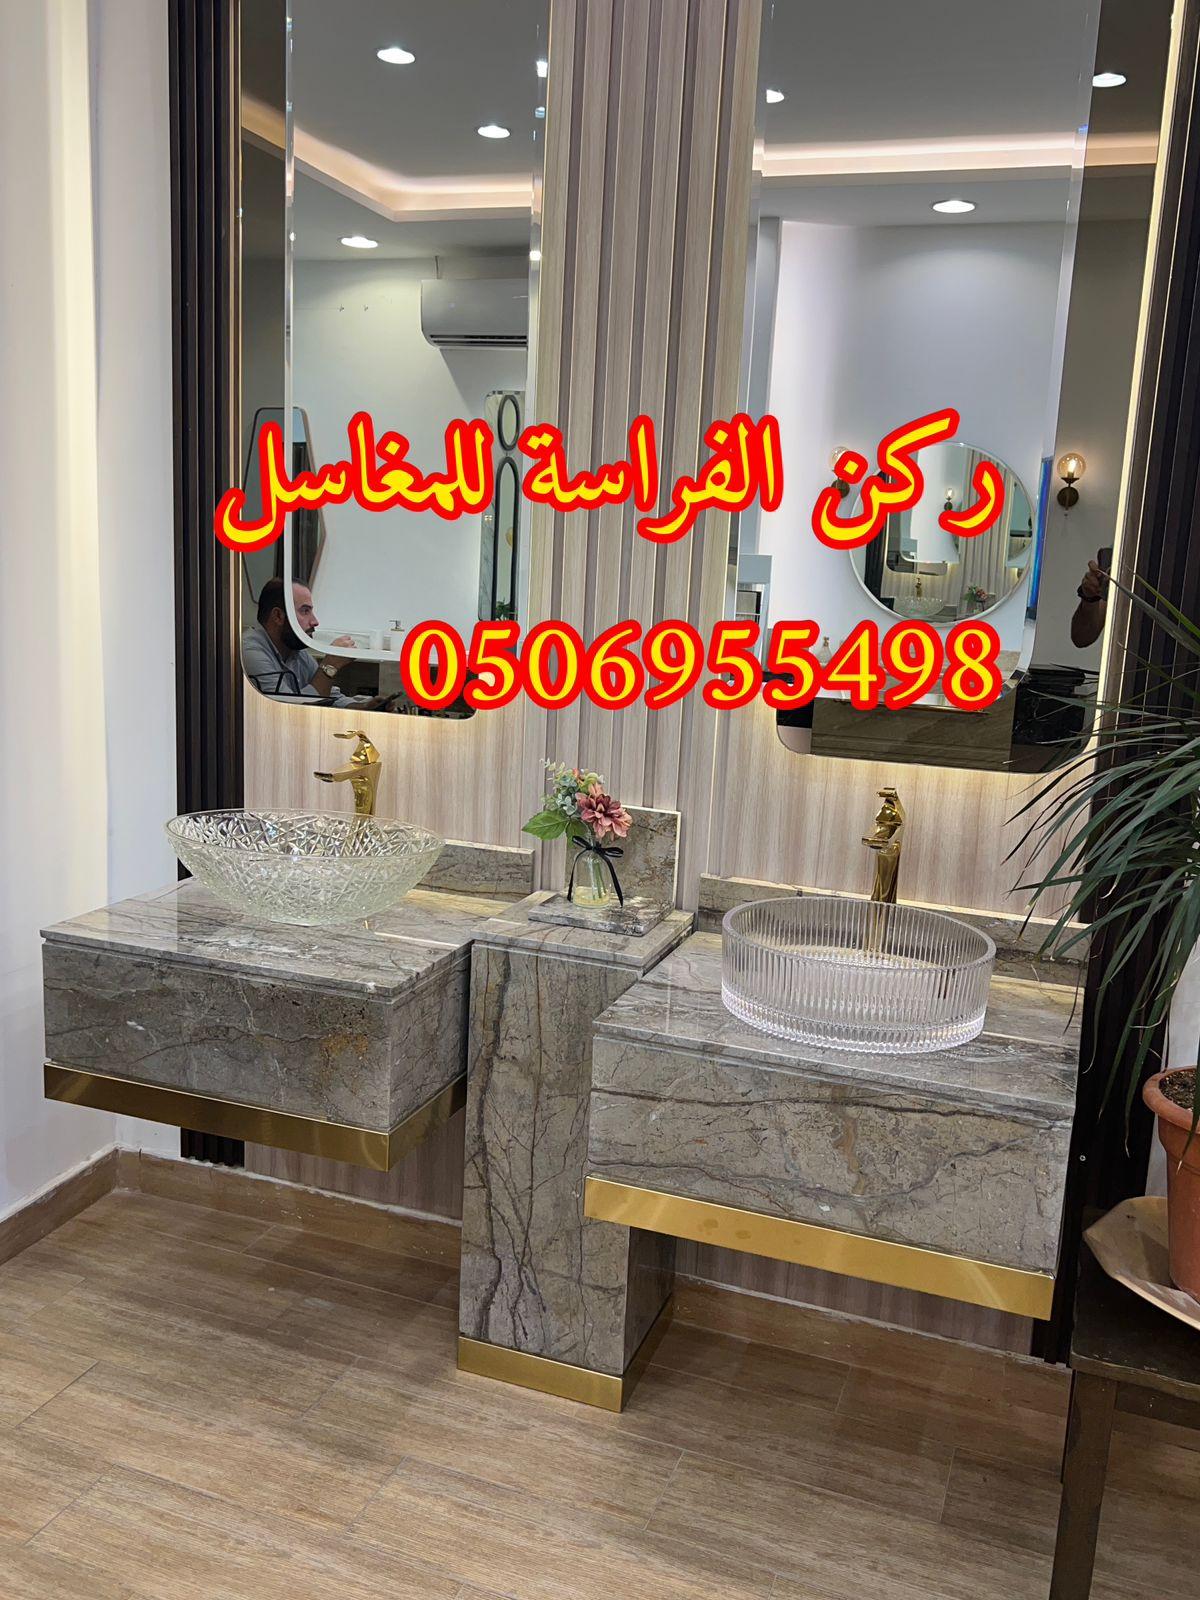 تركيب مغاسل حمامات رخام في الرياض, 0506955498 460155978